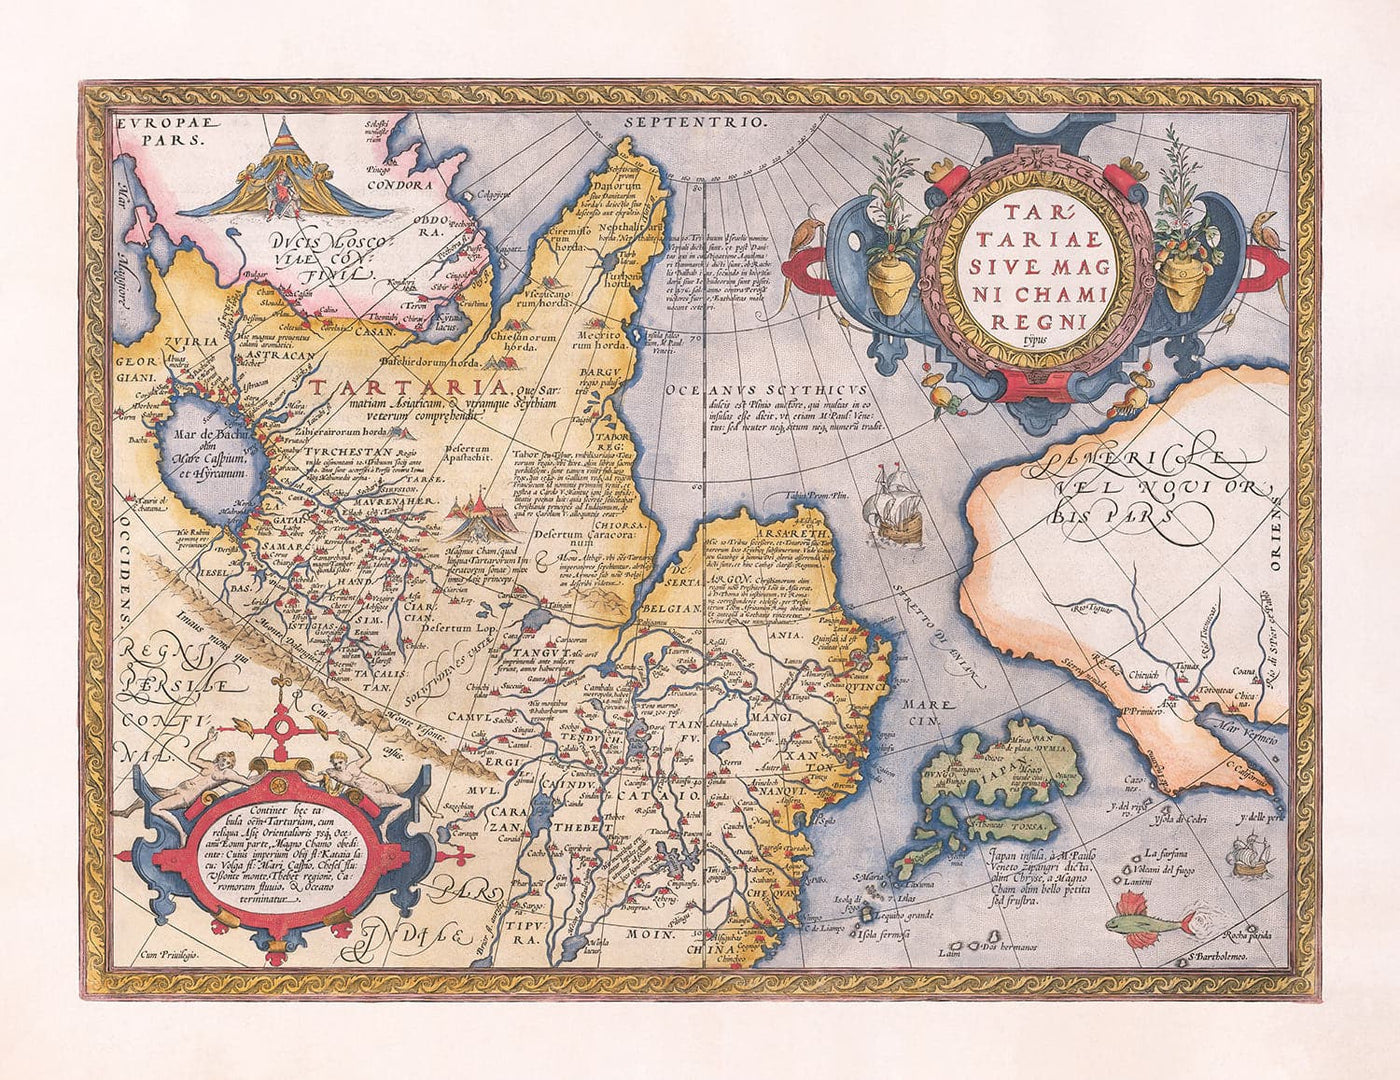 Alte Karte von Tartary (Russland, Sibirien, China) 1584 von Ortelius - Seltene Diagramm von Zentralasien, Amerika, Japan